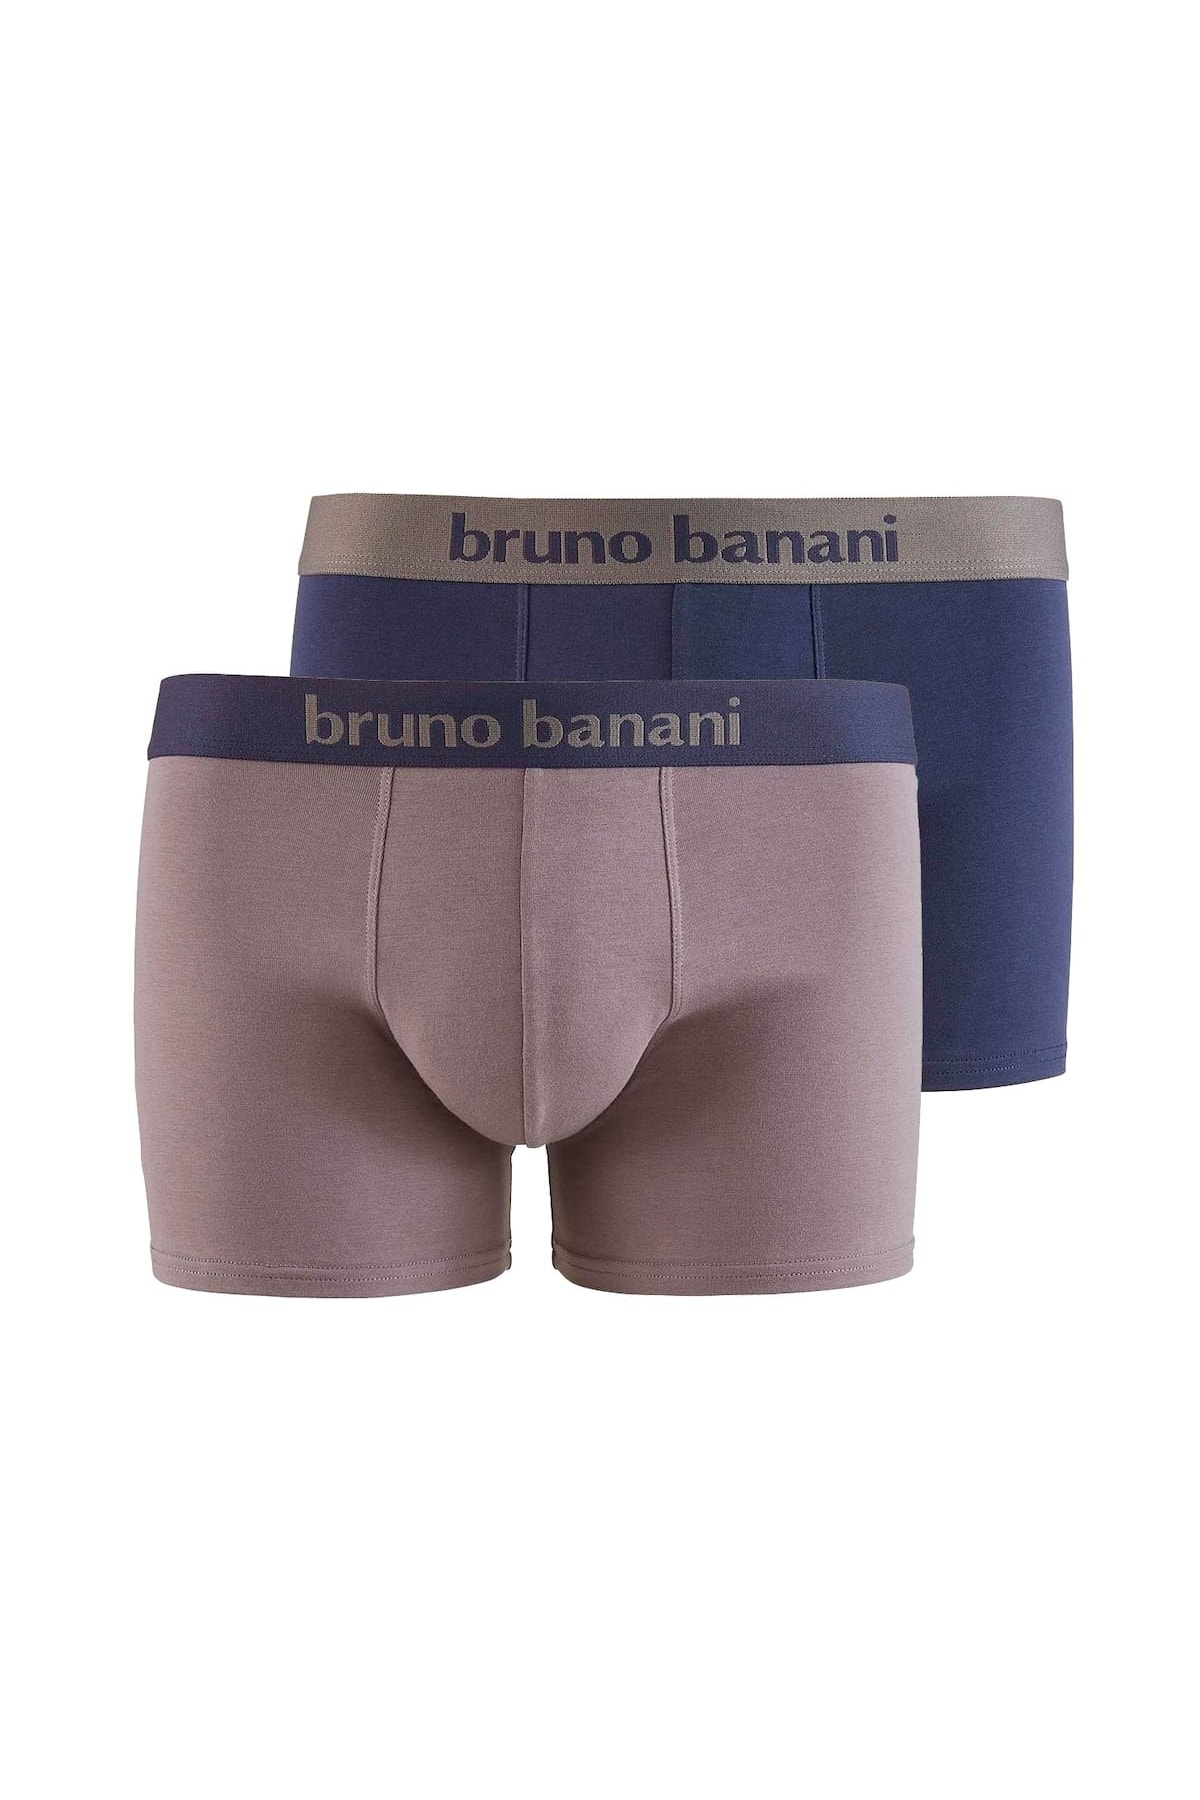 Bruno Banani Boxershorts Grau 2er-Pack